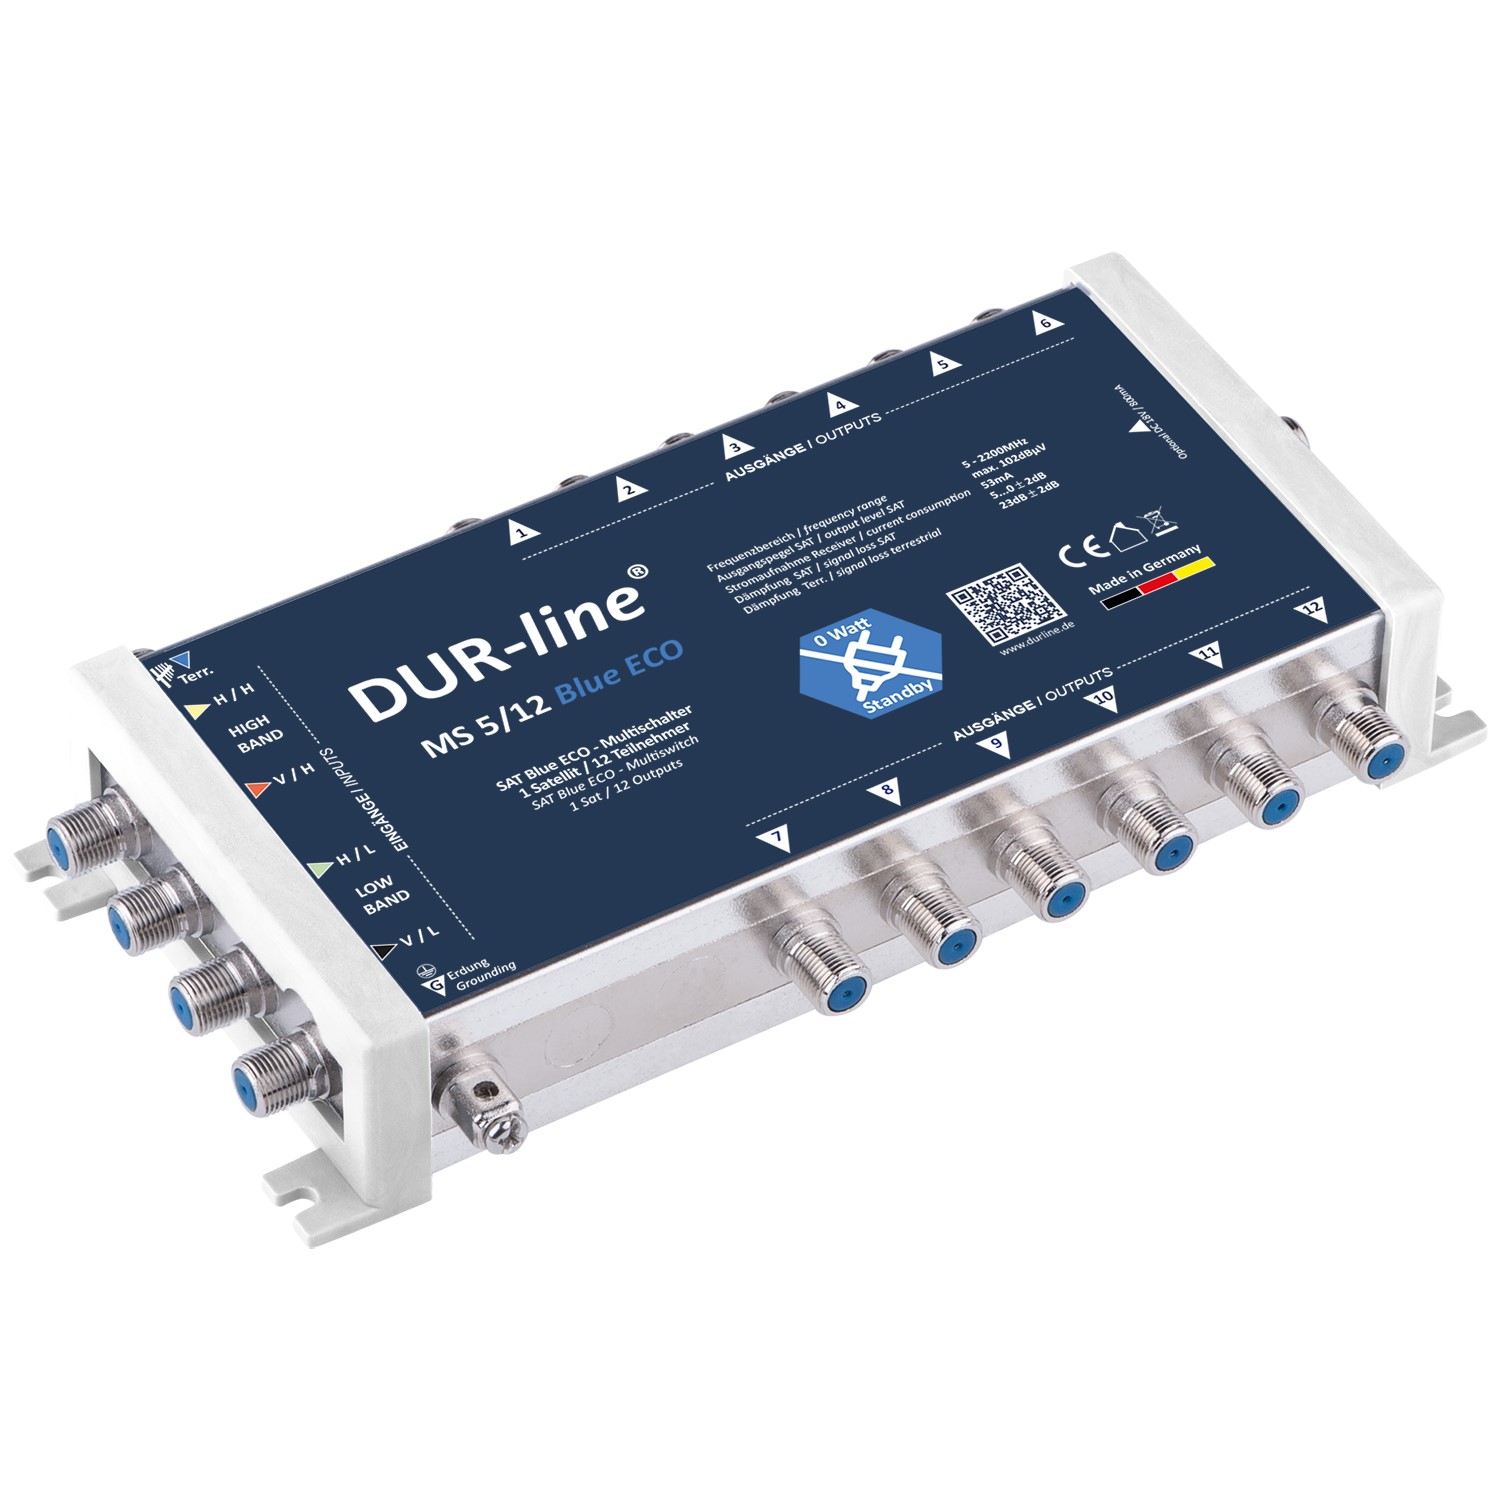 DUR-line MS Blue Eco Multischalter-Serie von DuraSat